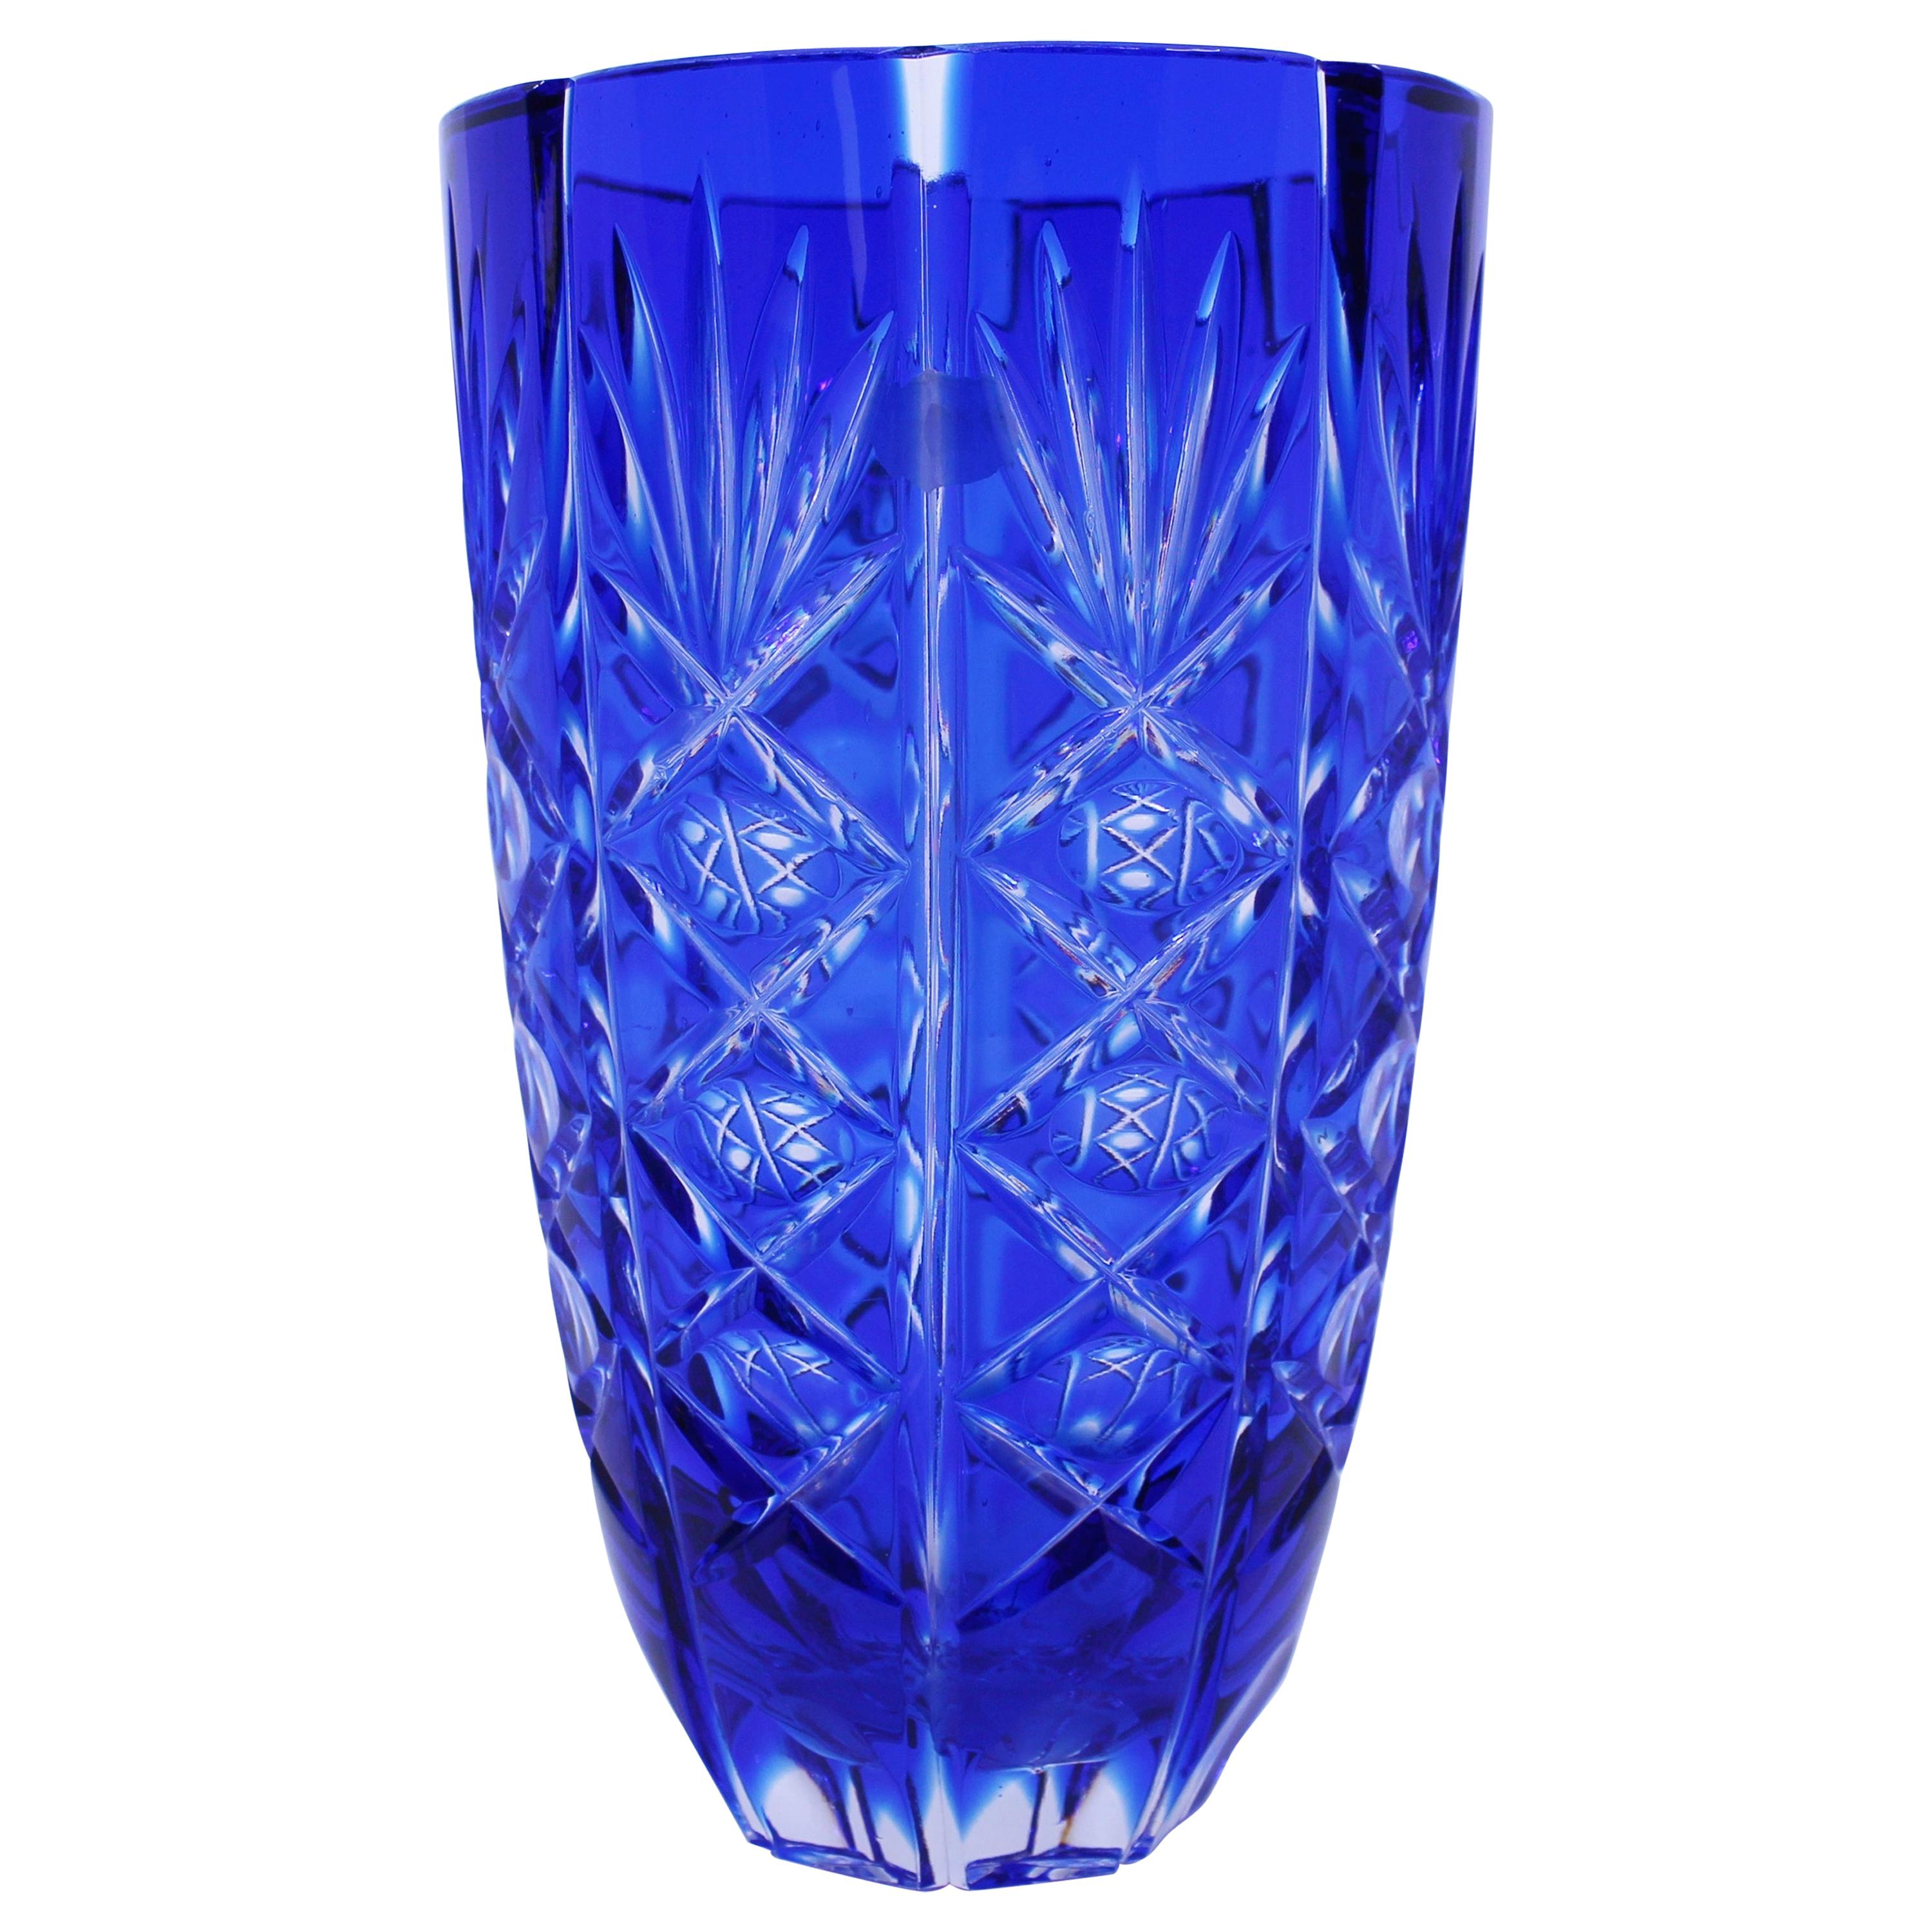 English Vintage Blue Overlay Crystal Glass Vase For Sale